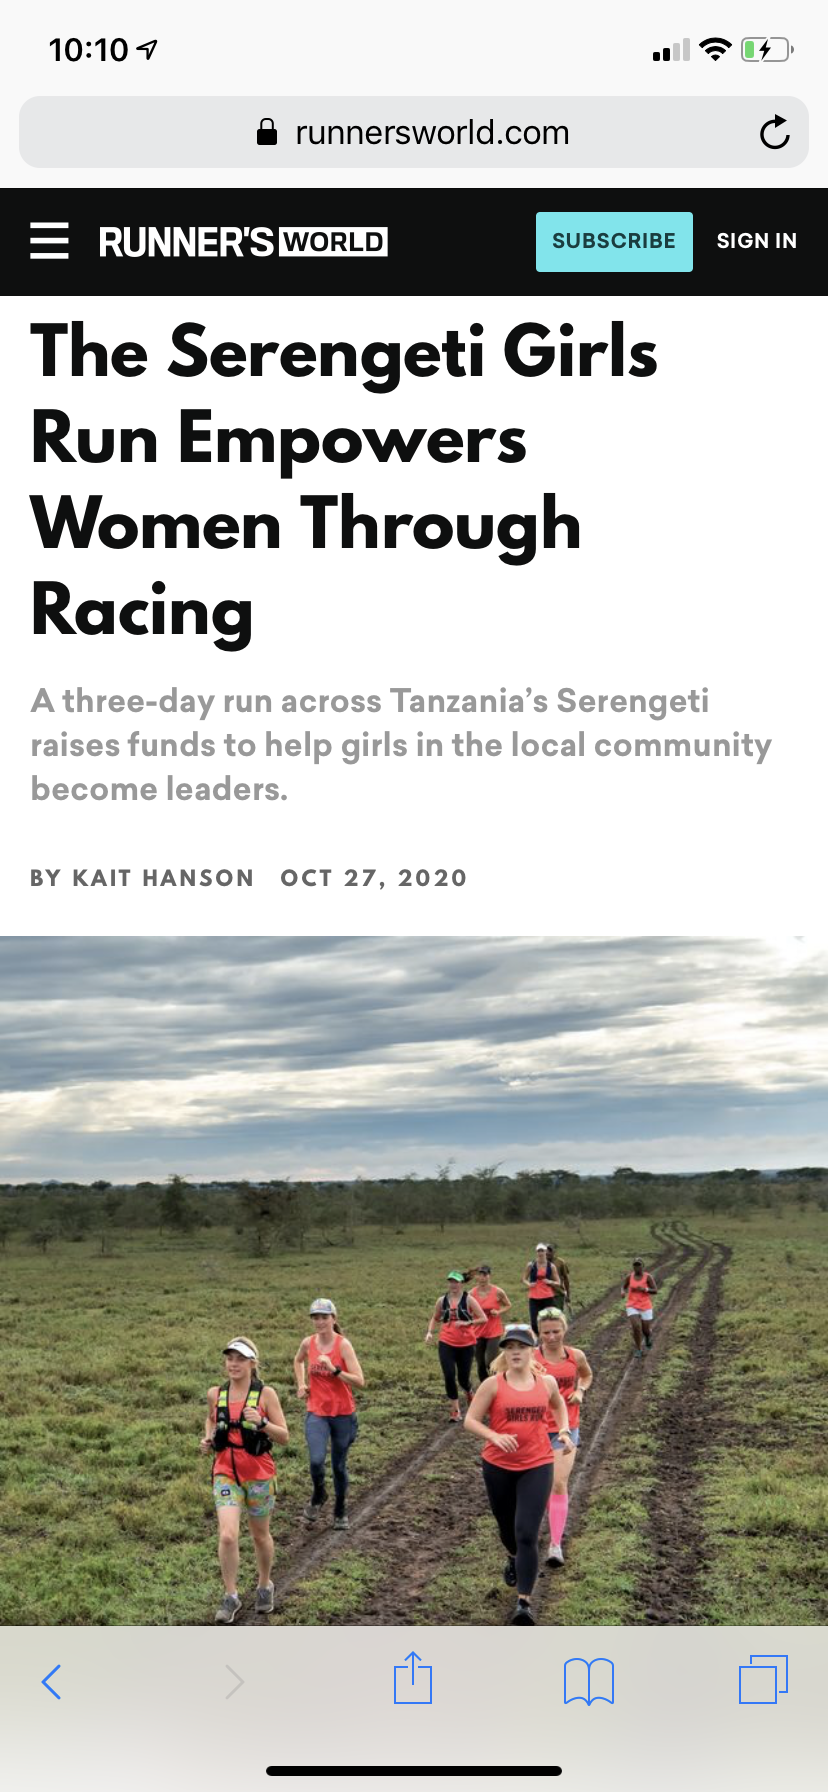 Runner's World - Serengeti Girls Run